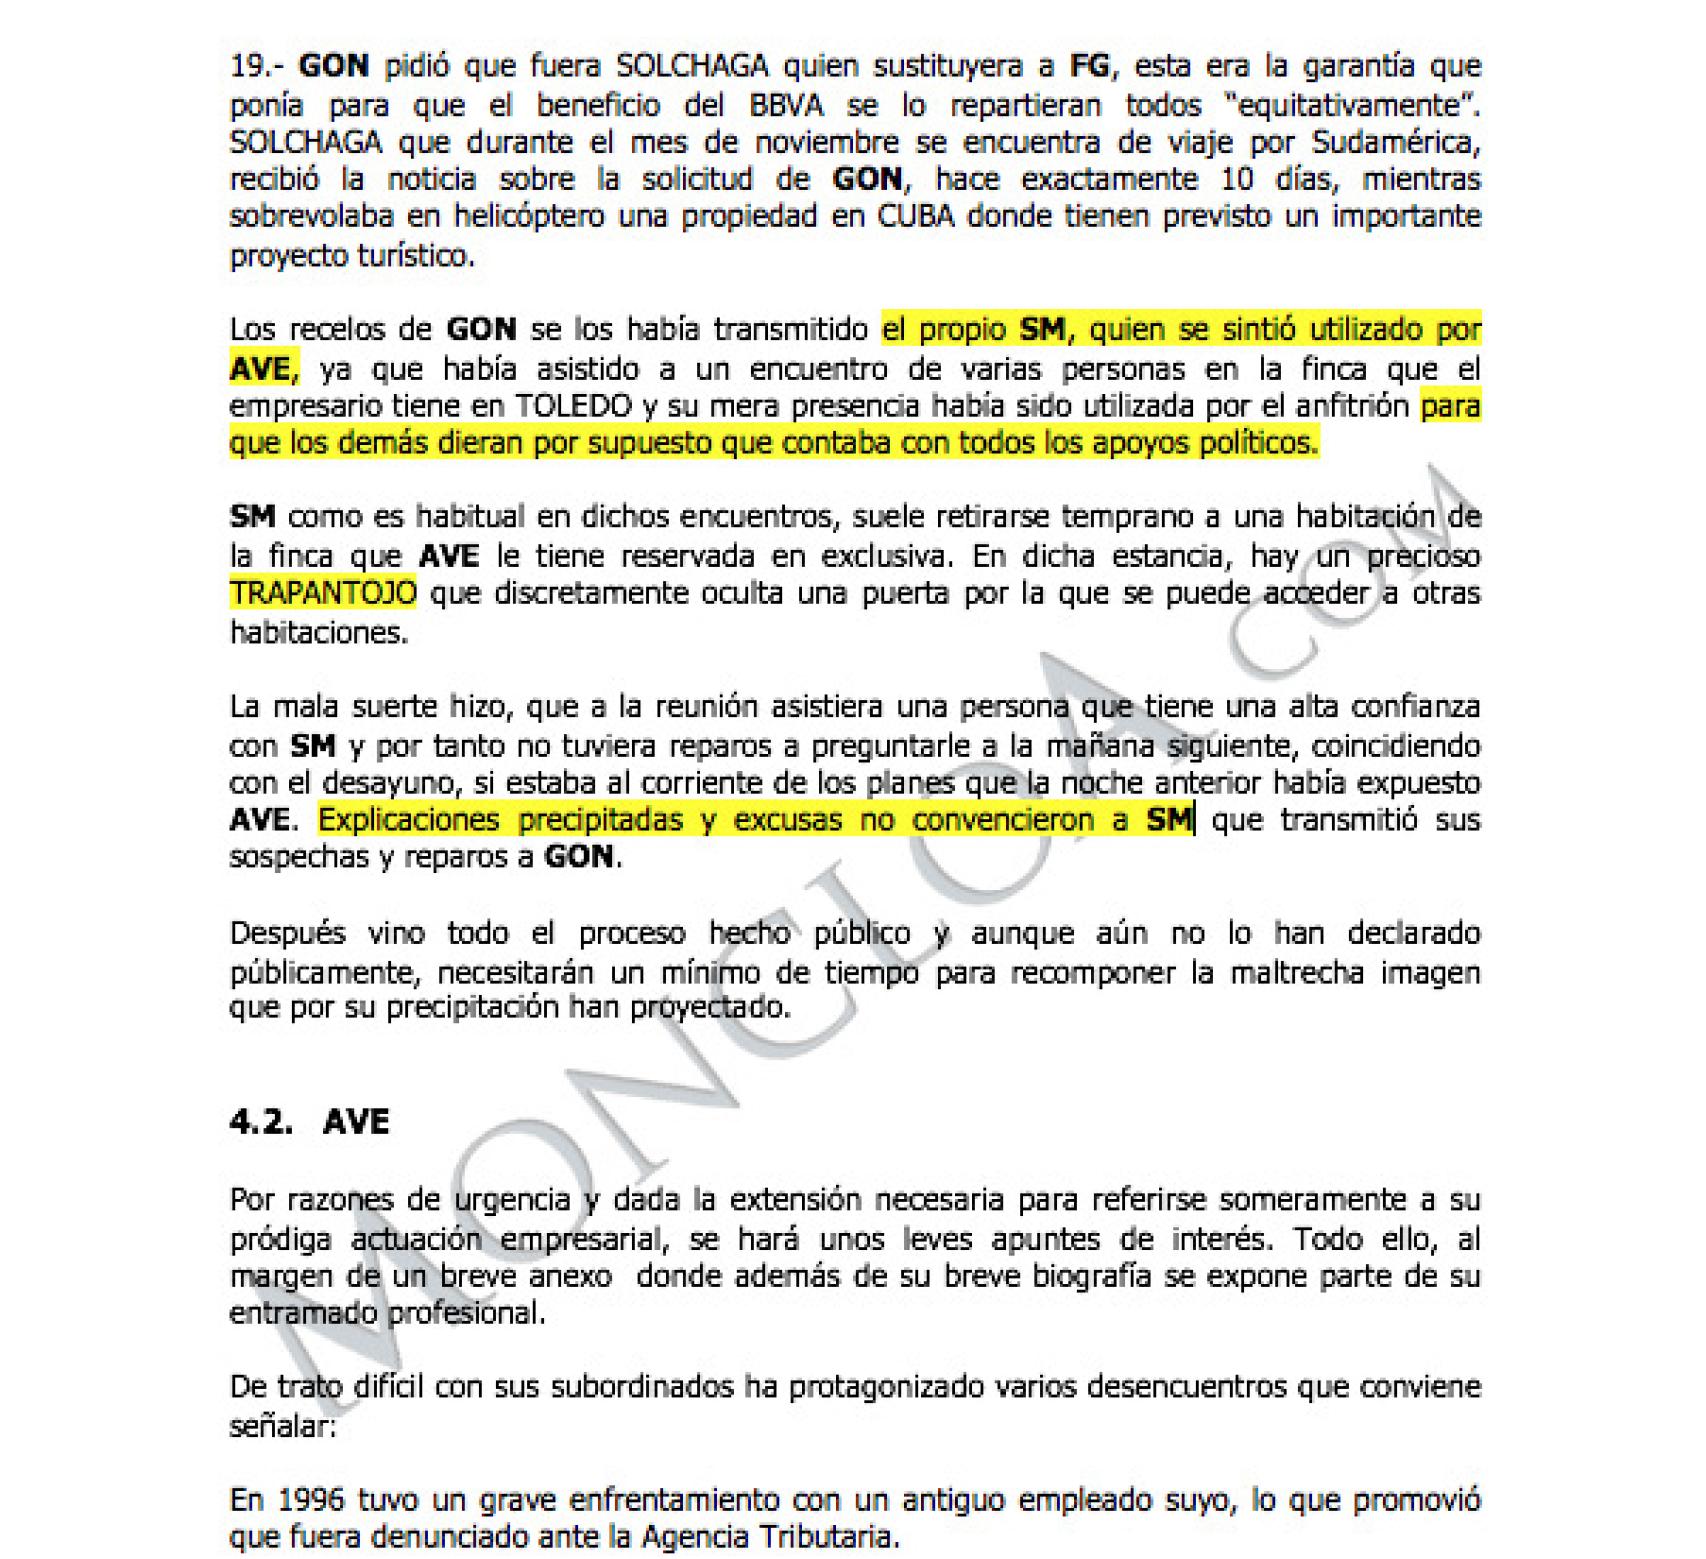 Documento publicado por Moncloa.com